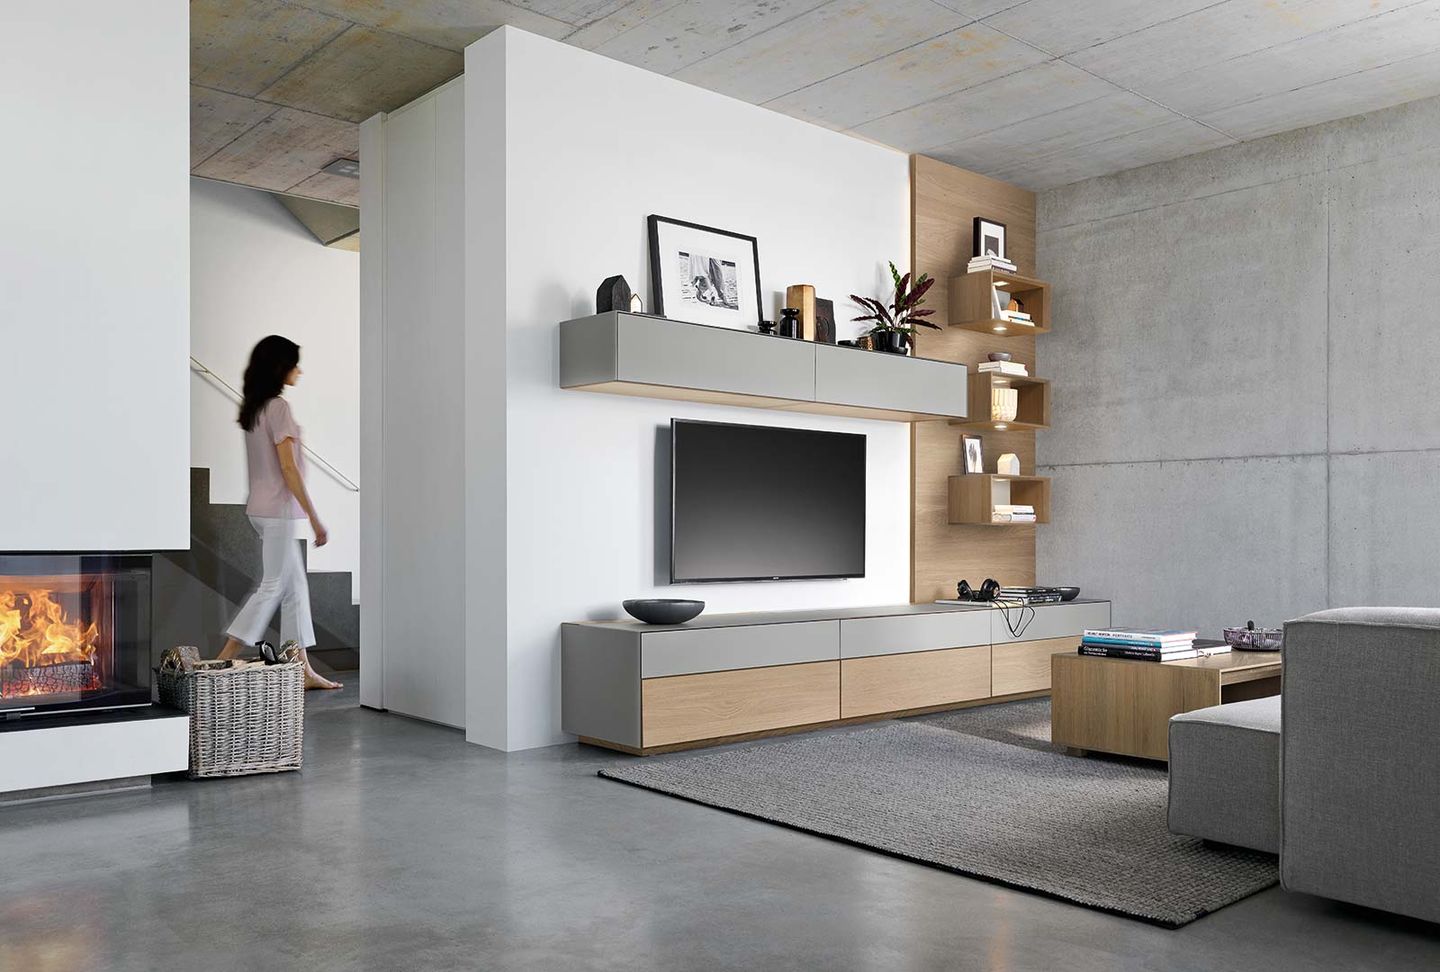 Стенная мебель „cubus pure“ из массива дерева с подвижными элементами дизайна